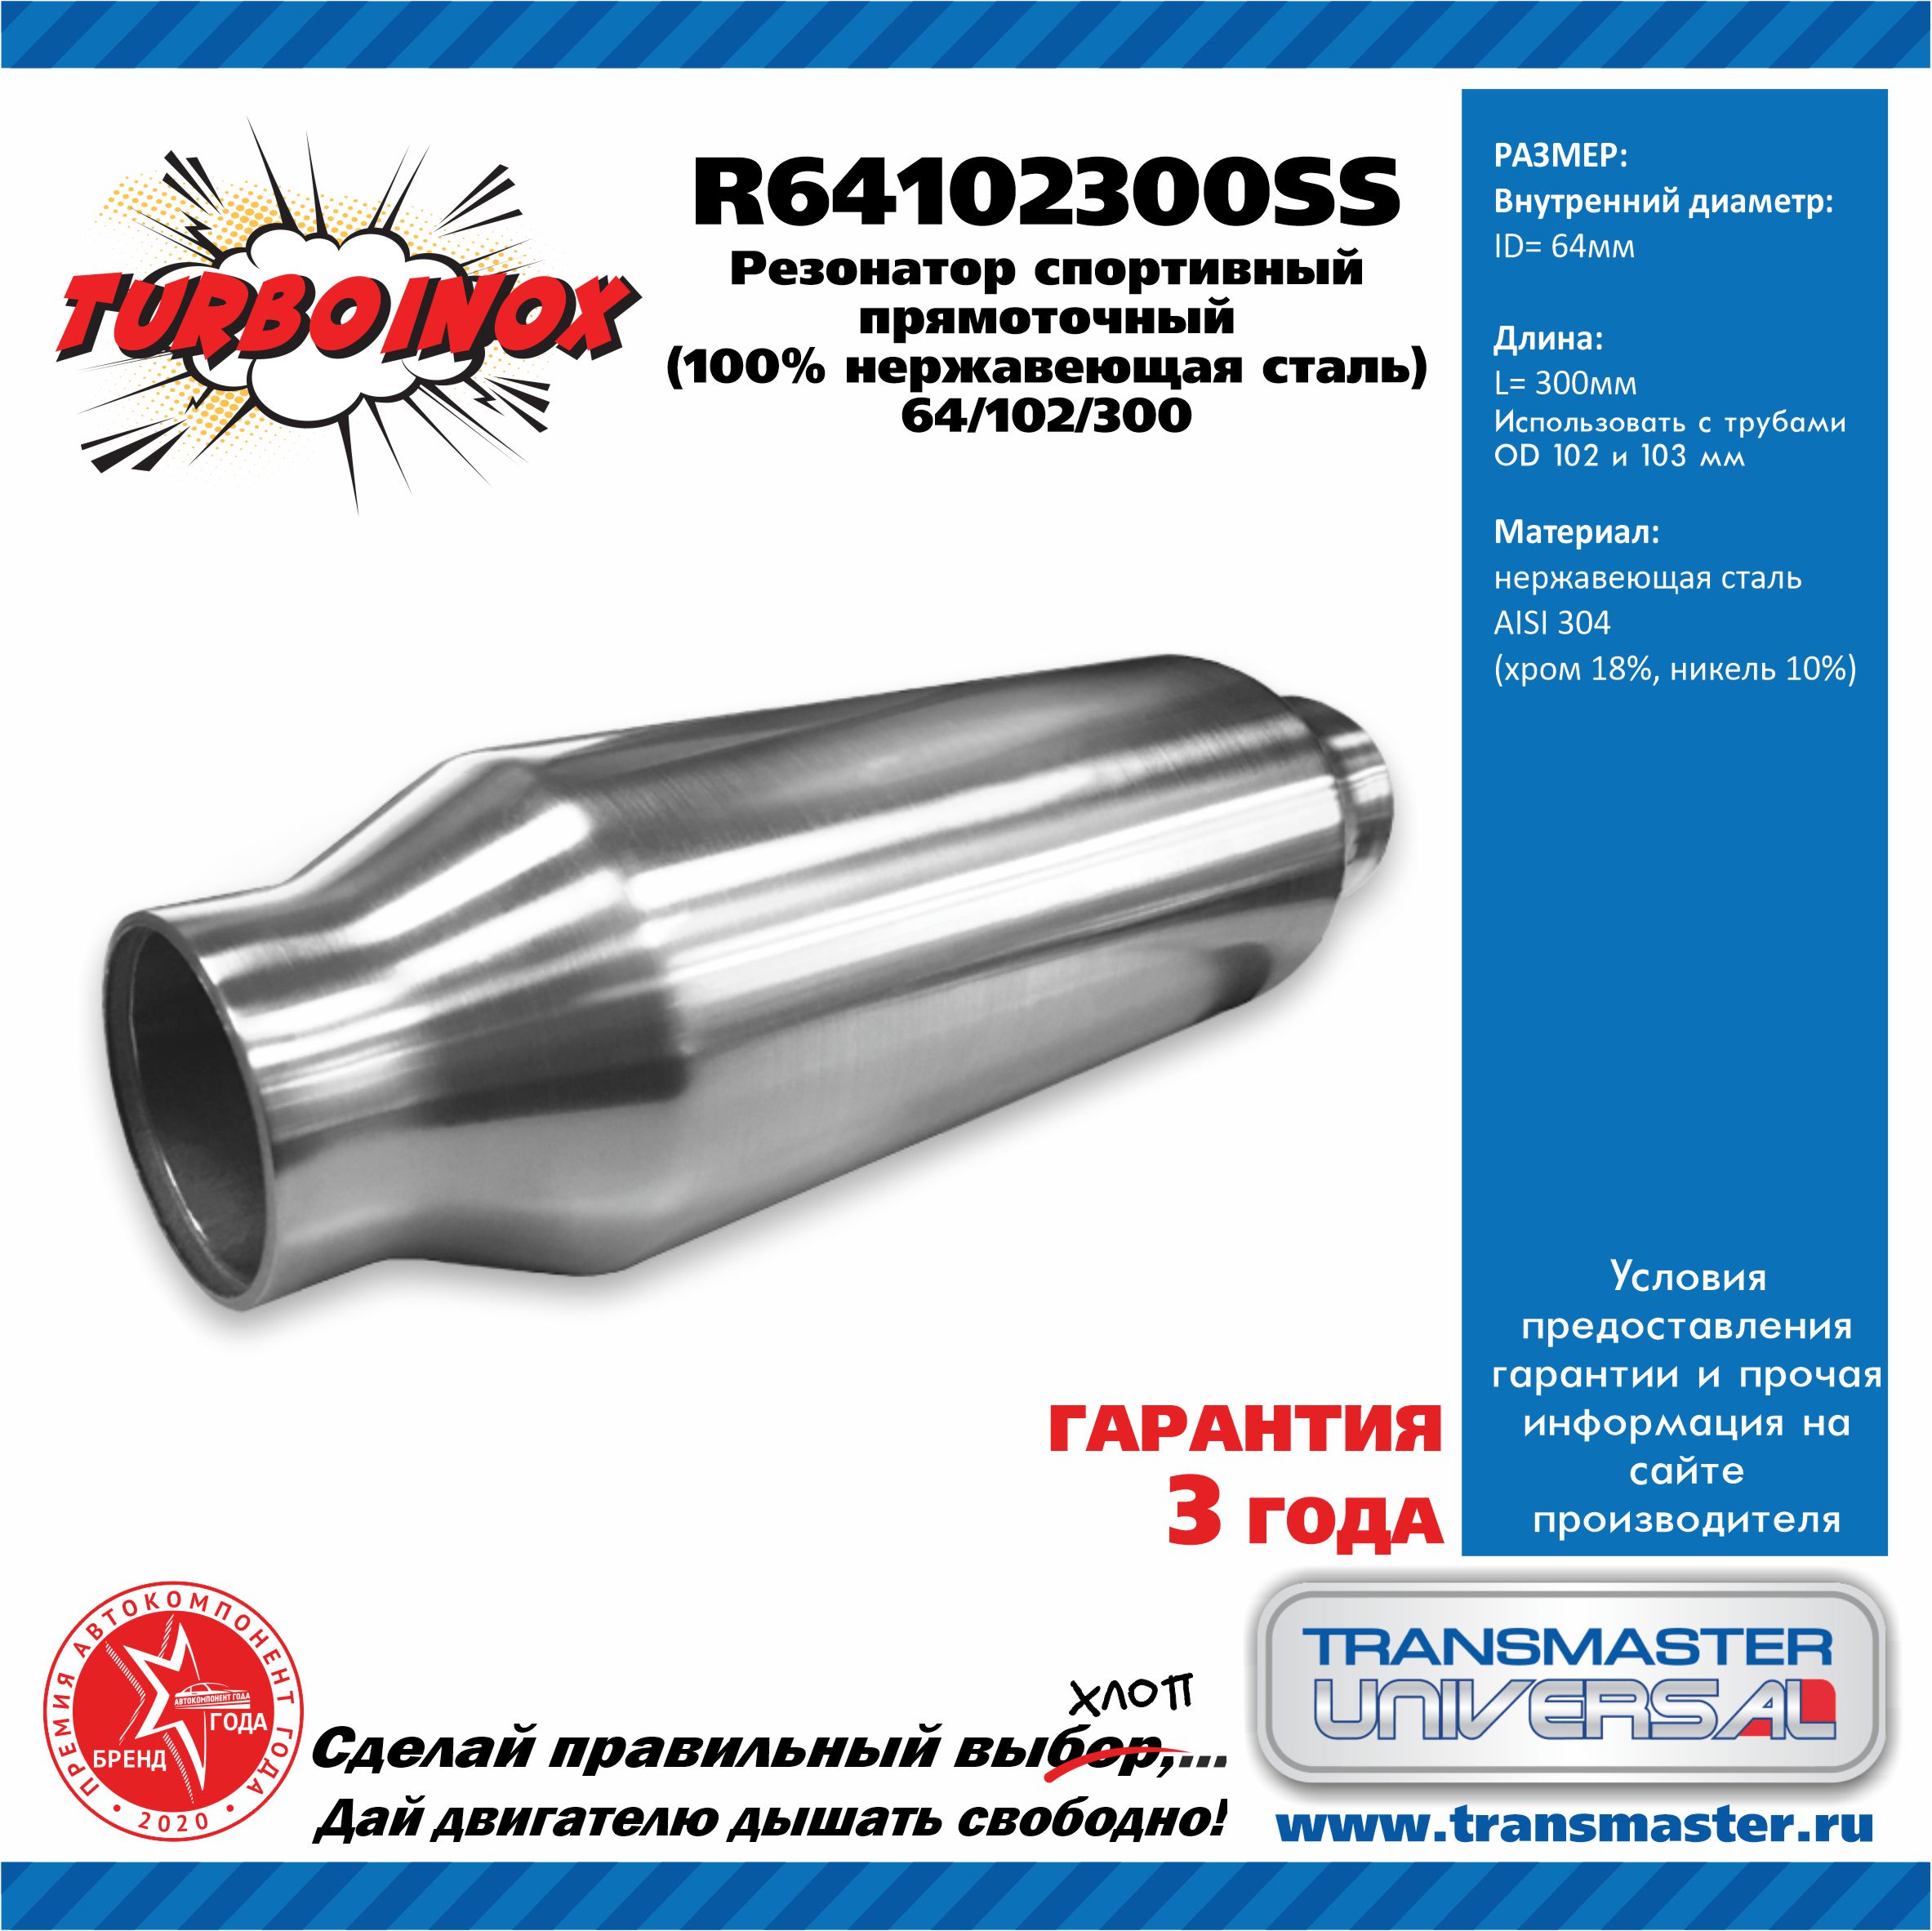 Резонатор спортивный прямоточный серия turboinox (100% нержавеющая сталь) - TRANSMASTER UNIVERSAL R64102300SS